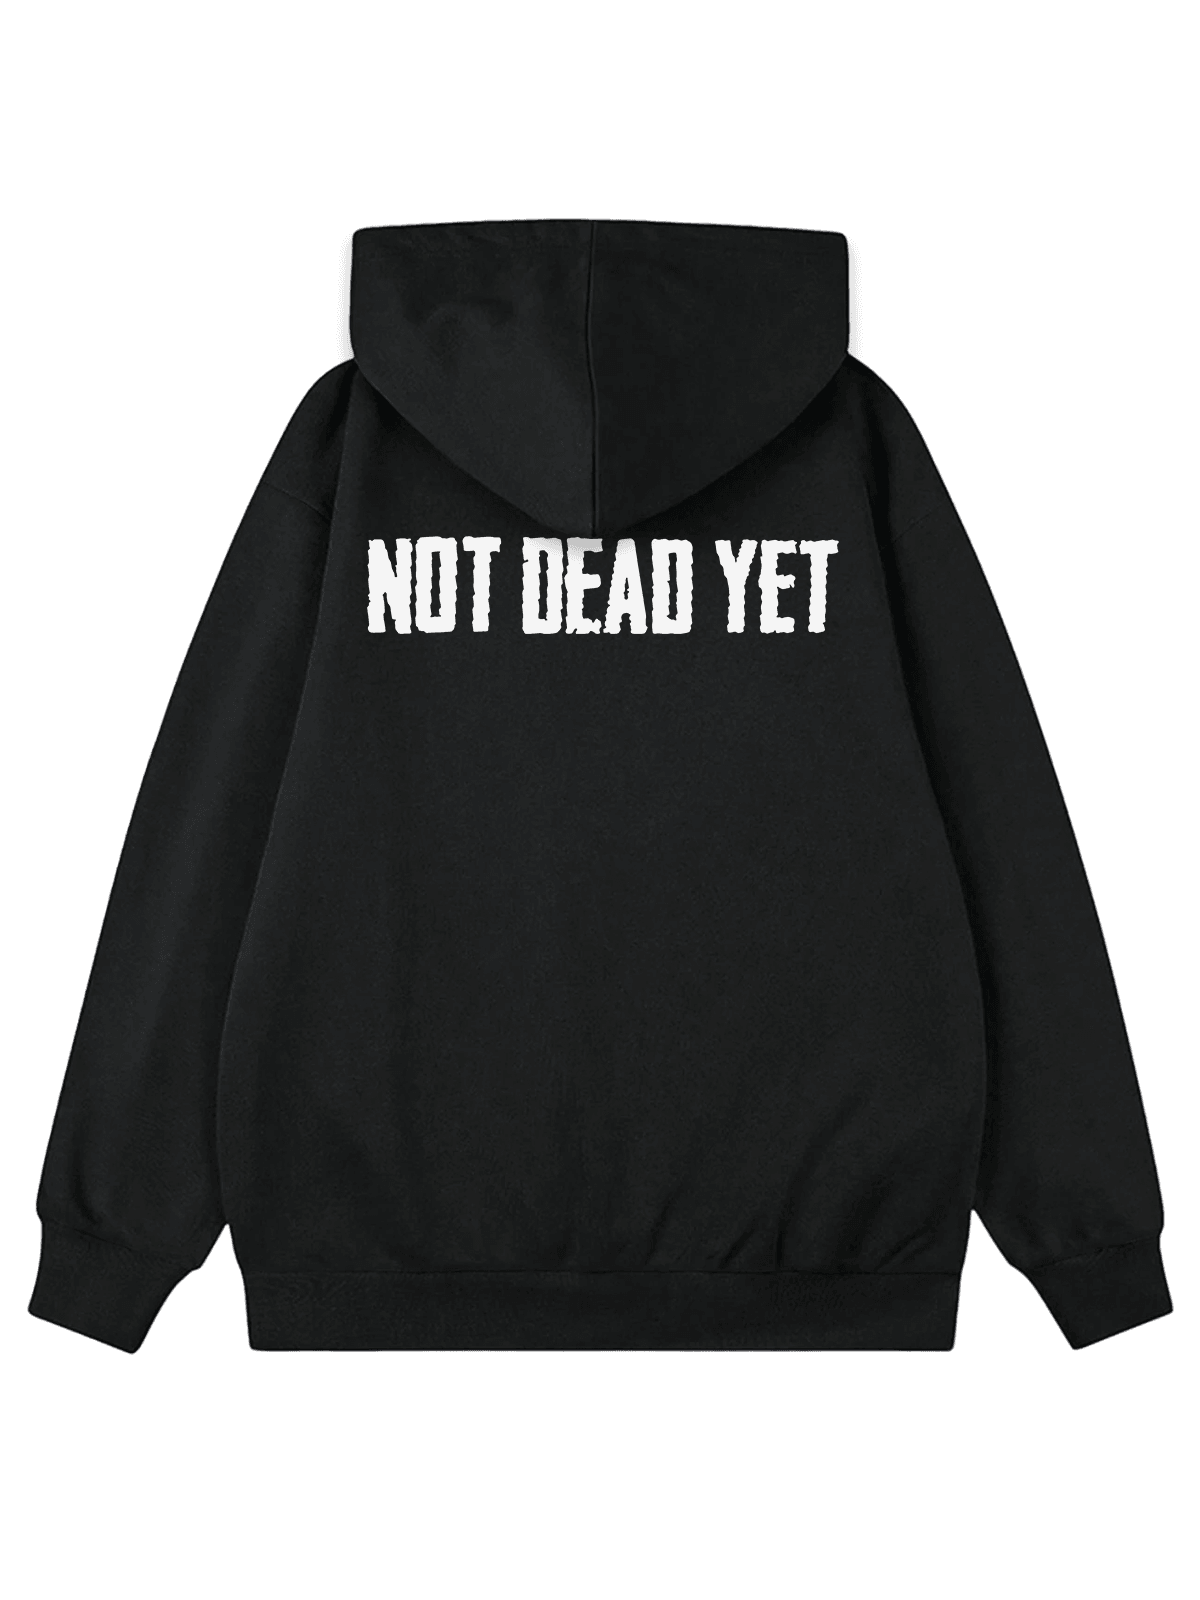 "NOT DEAD YET" Oversize Hoodie